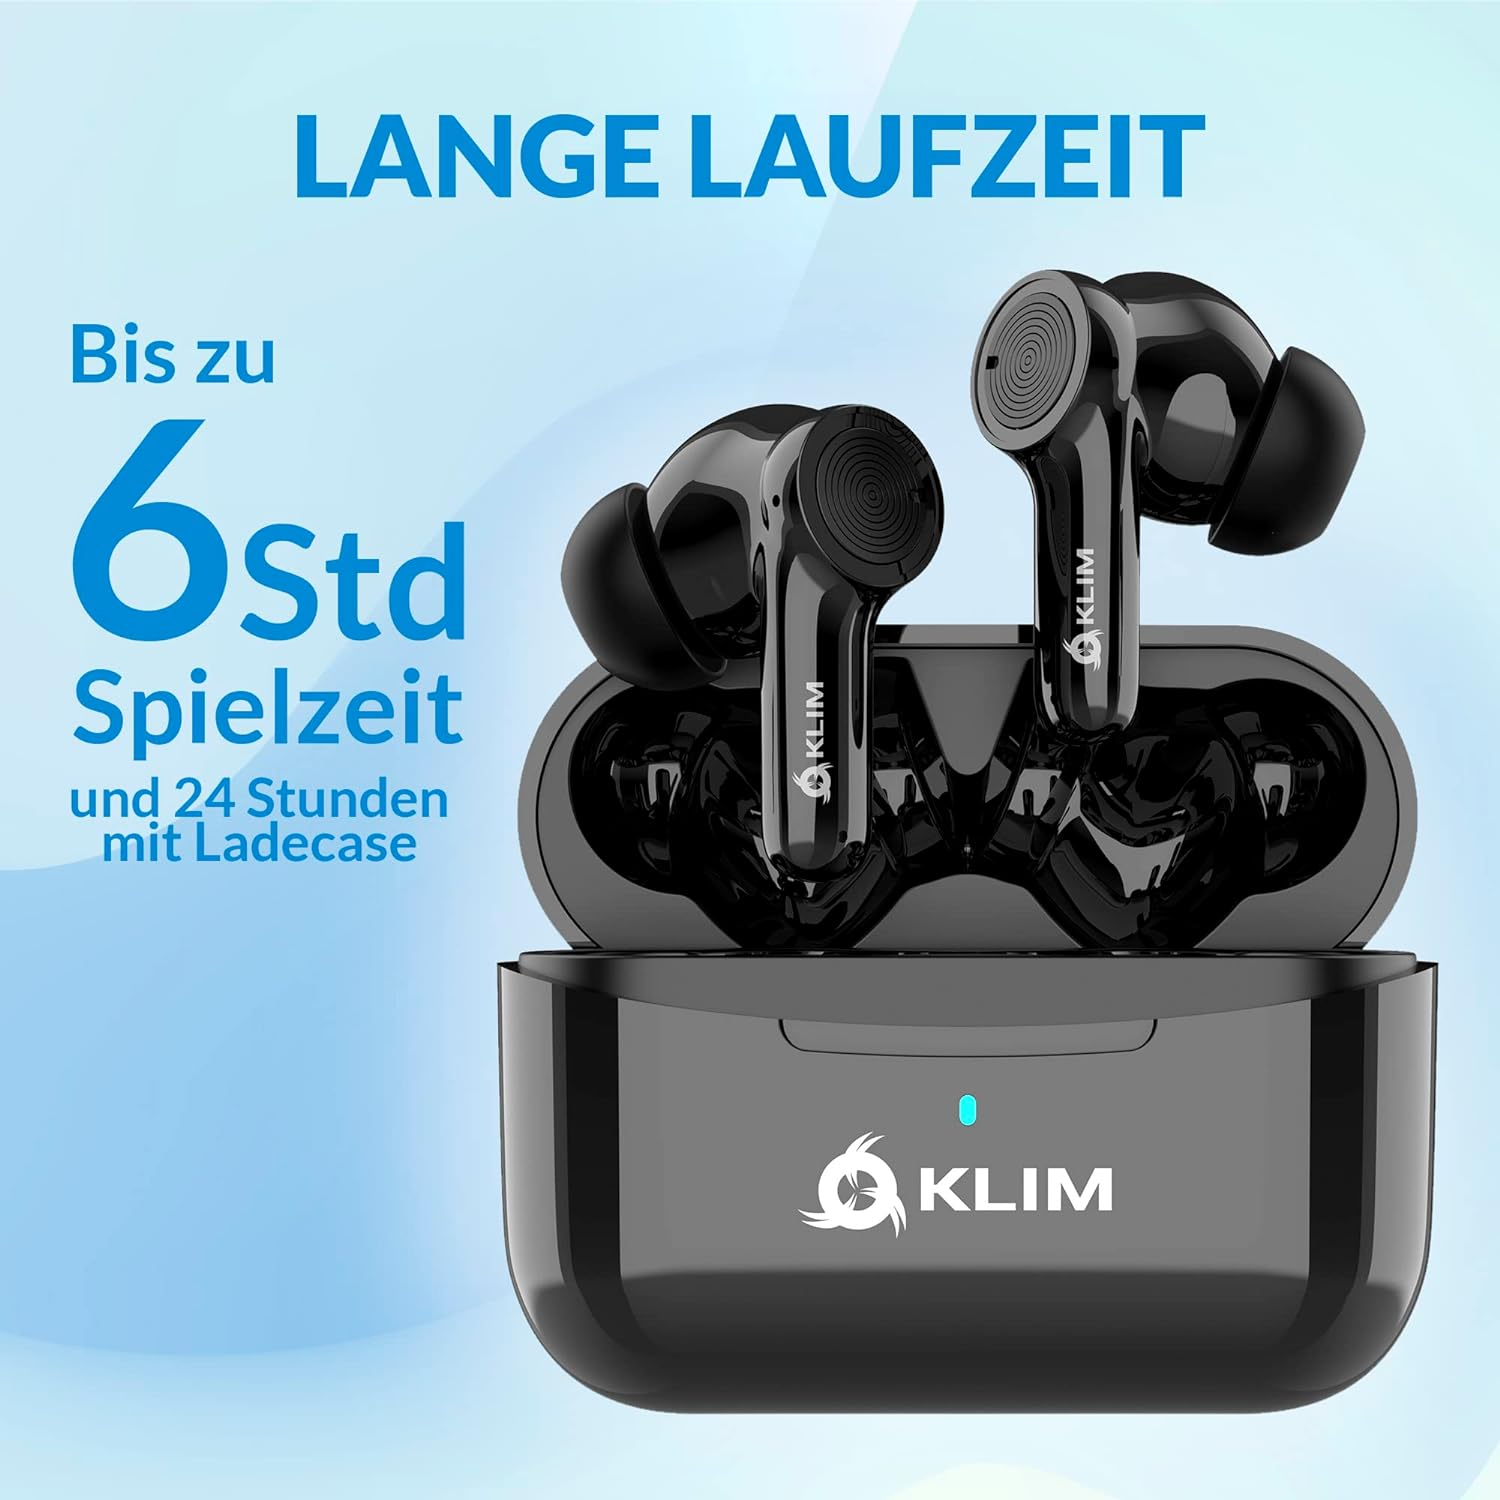 Bluetooth Wireless In-ear KLIM Pods, Kopfhörer Schwarz Bluetooth In-ear True